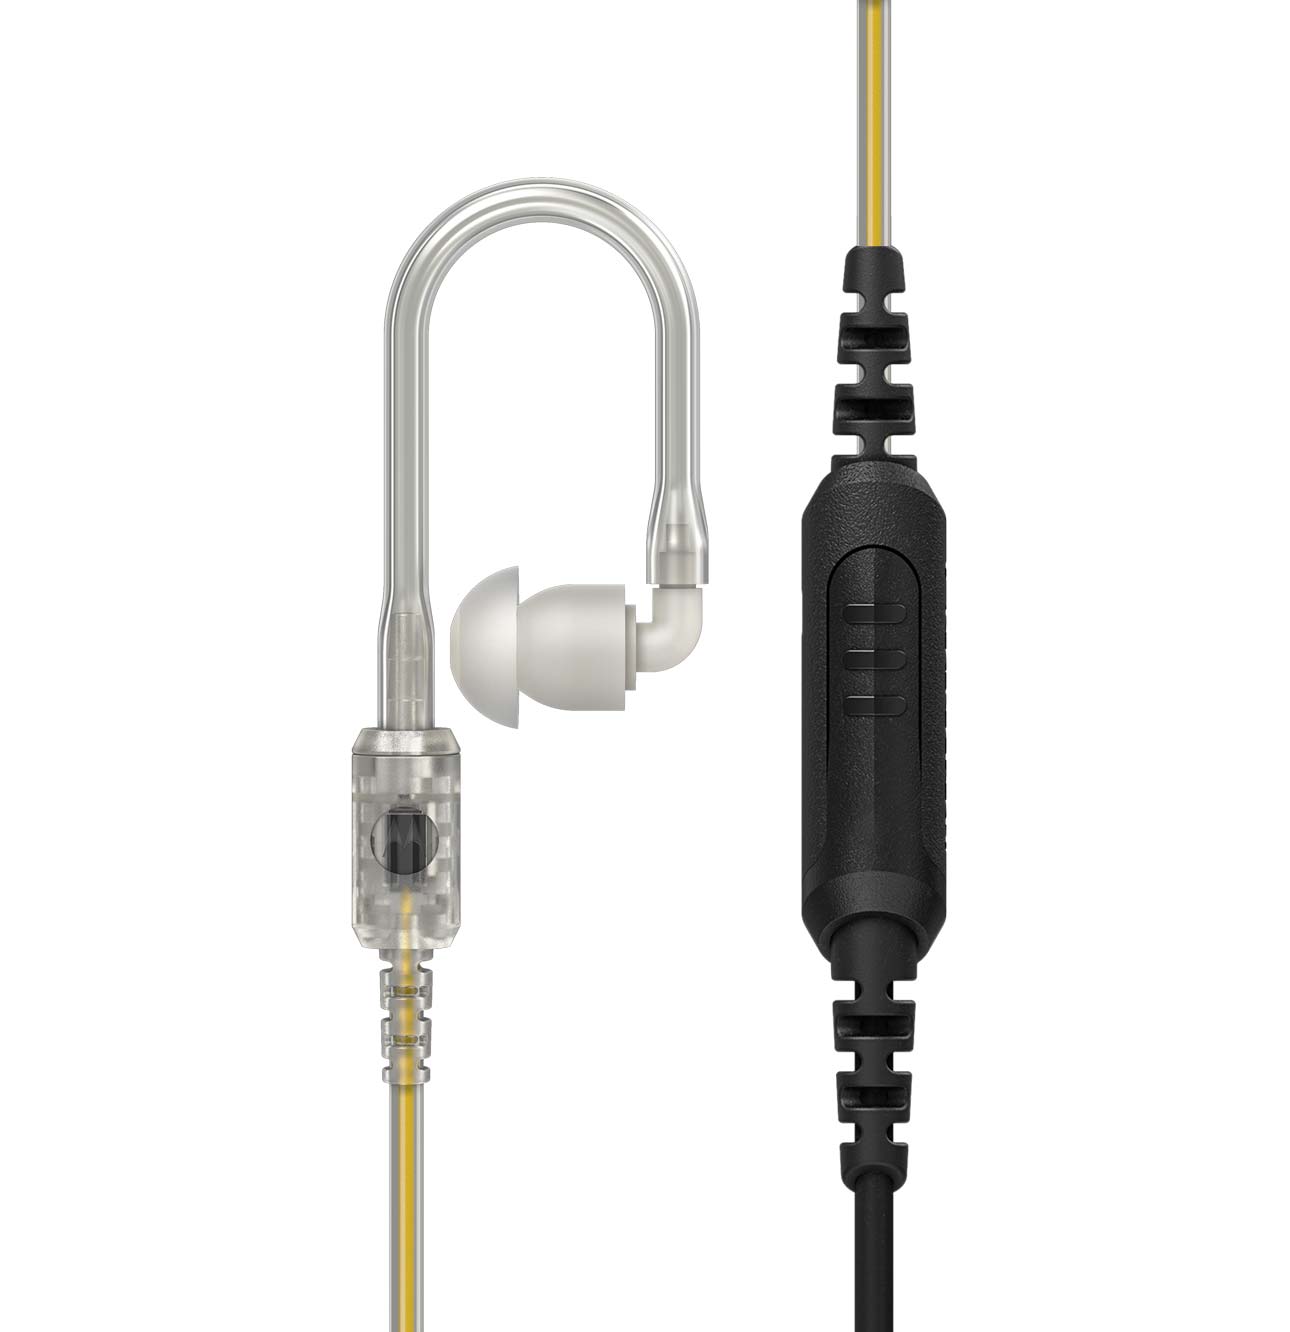 Motorola Schallschlauch mit PTT Taste und Mikrofon am Kabel PMLN8191A passend für Evolve